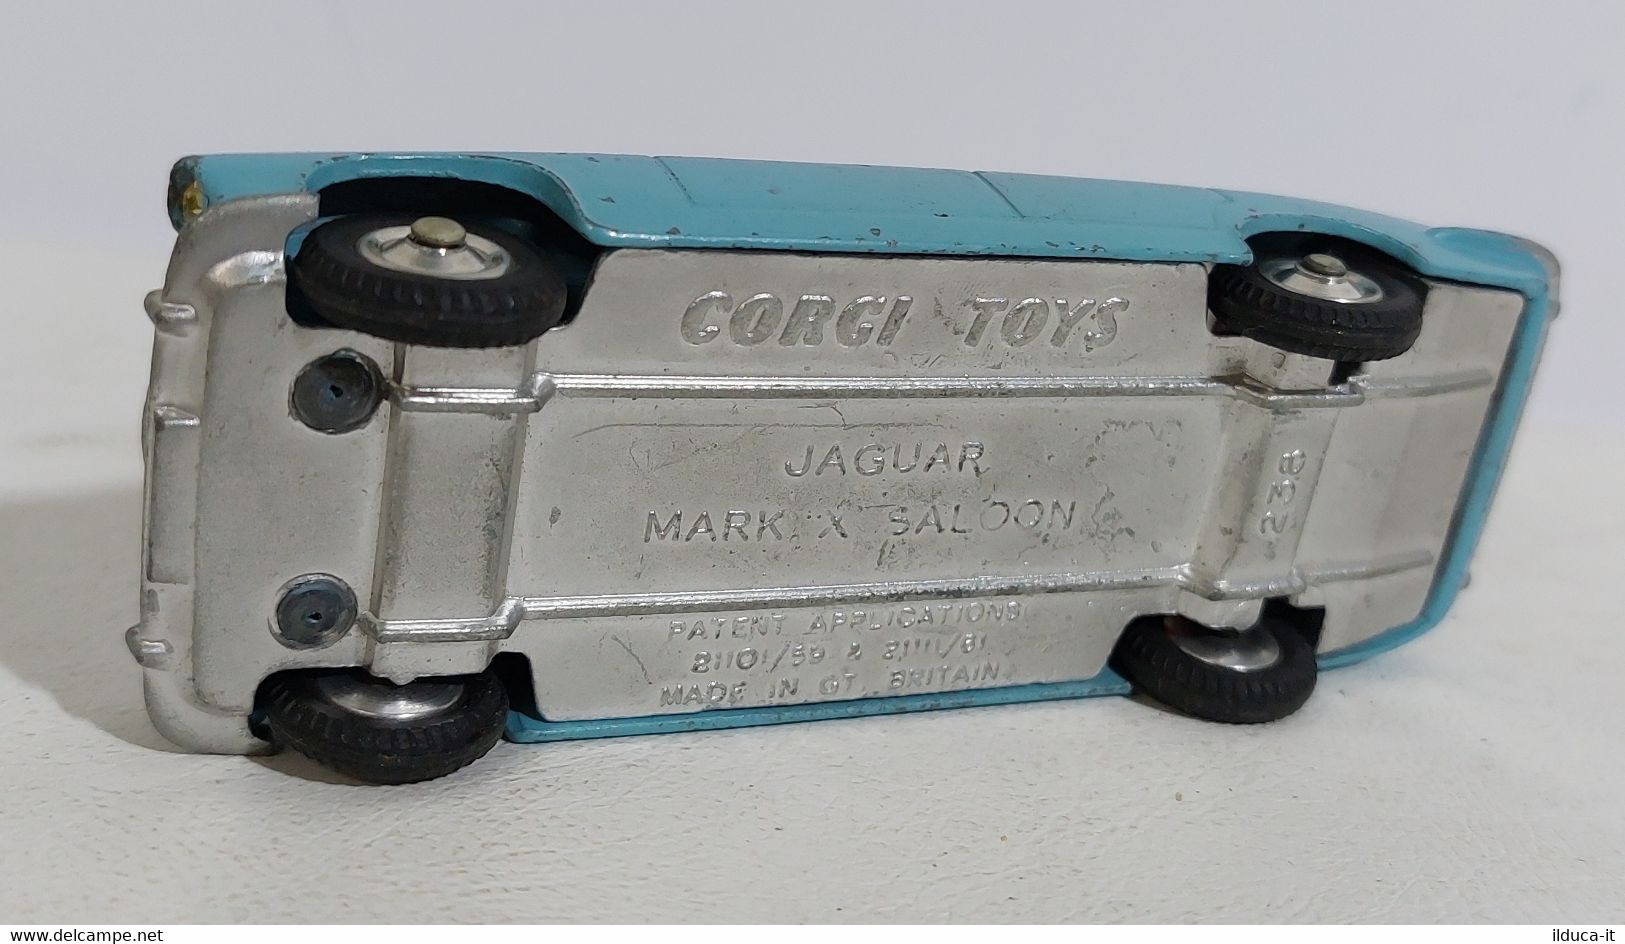 I109325 Corgi Toys 1/43 N. 238 - Jaguar Mark X Saloon - Corgi Toys